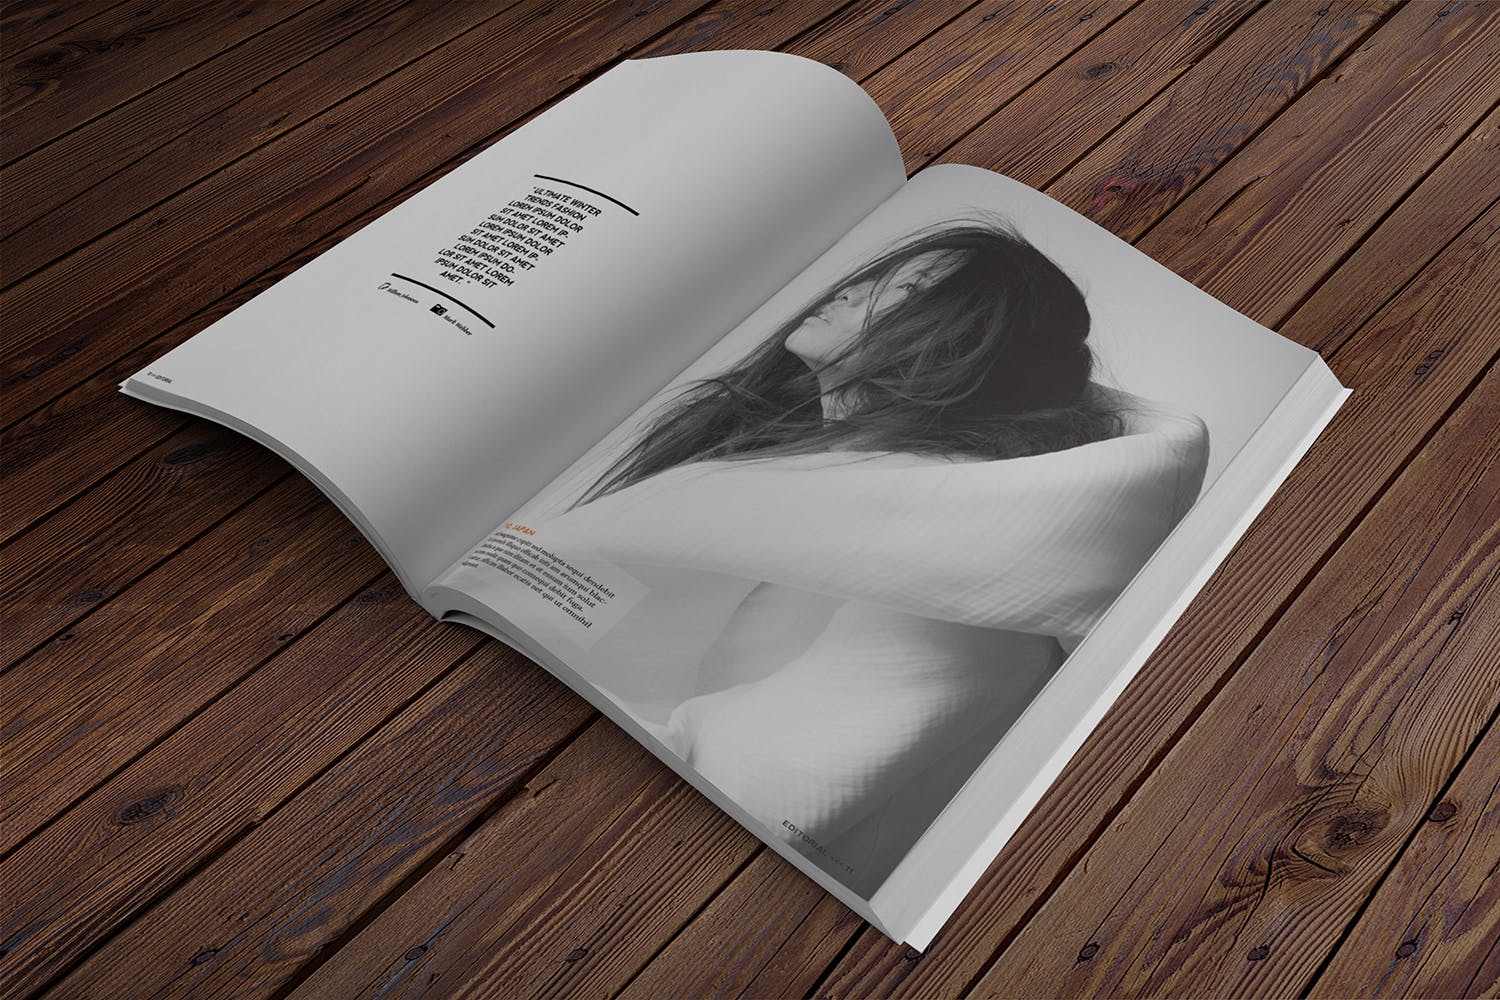 杂志内页排版设计透视图样机第一素材精选 Magazine Mockup Perspective View插图(2)